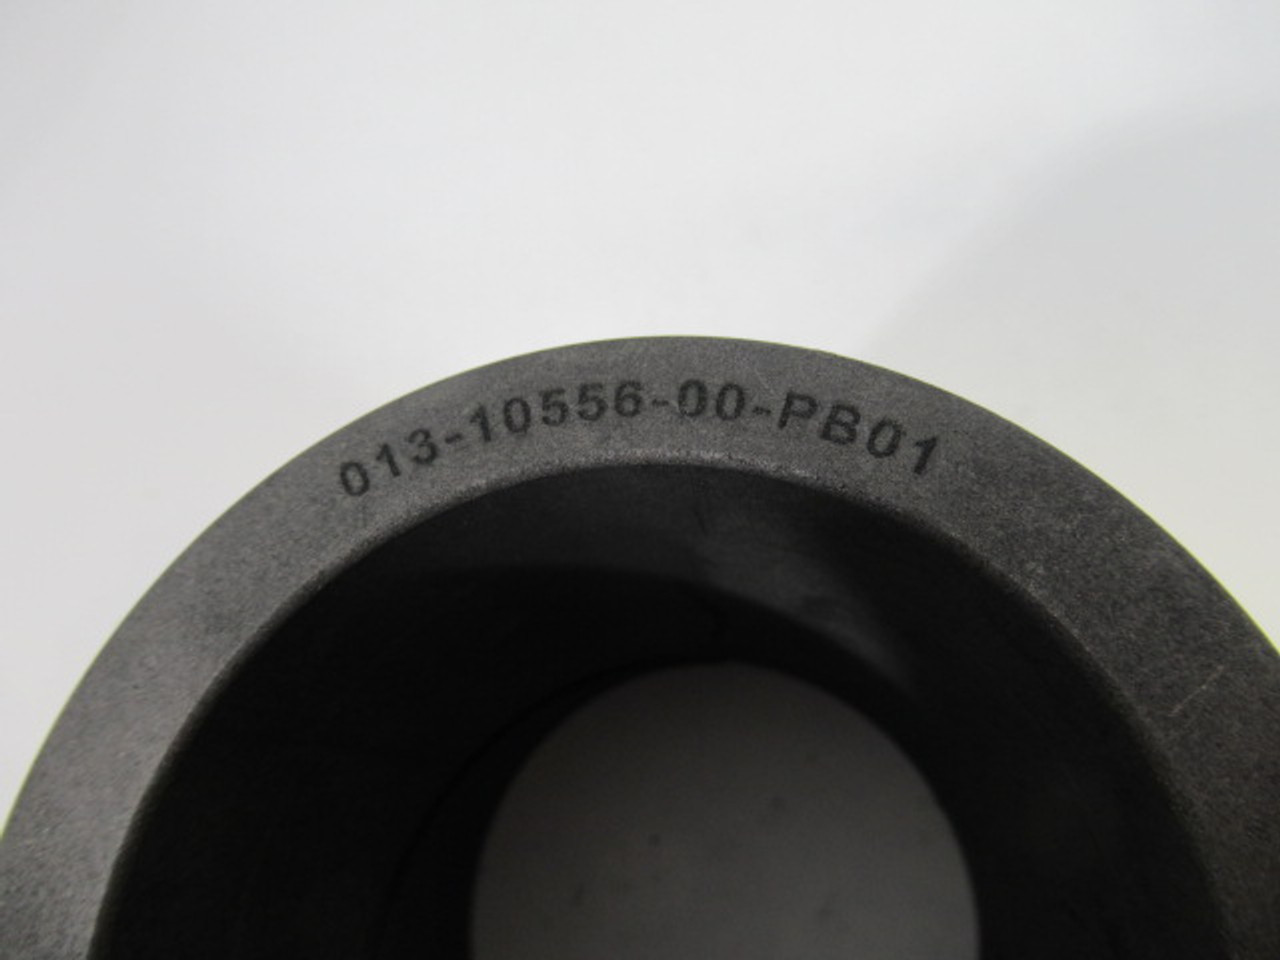 CPC Pump 013-10556-00-PB01 Pump Bearing Spacer Sleeve 3.08"OD 2.39"ID ! NOP !